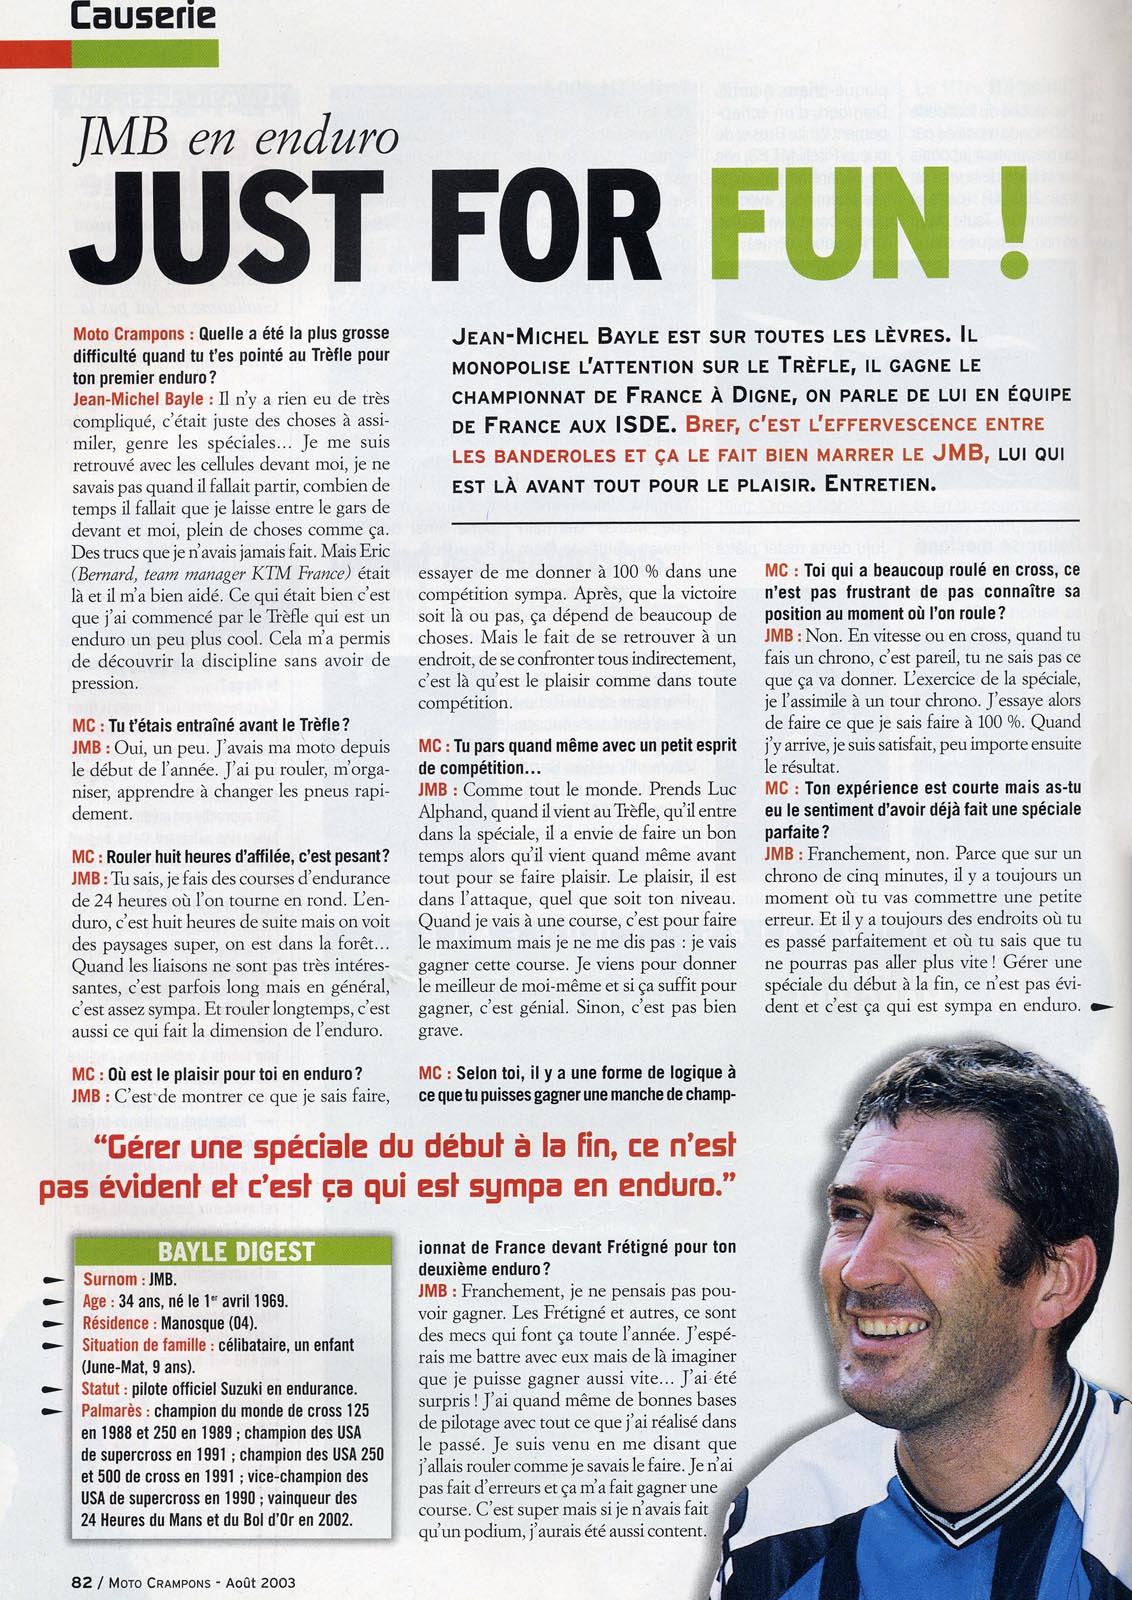 Une interview de JMB dans le numéro D'Août 2003, la page 82